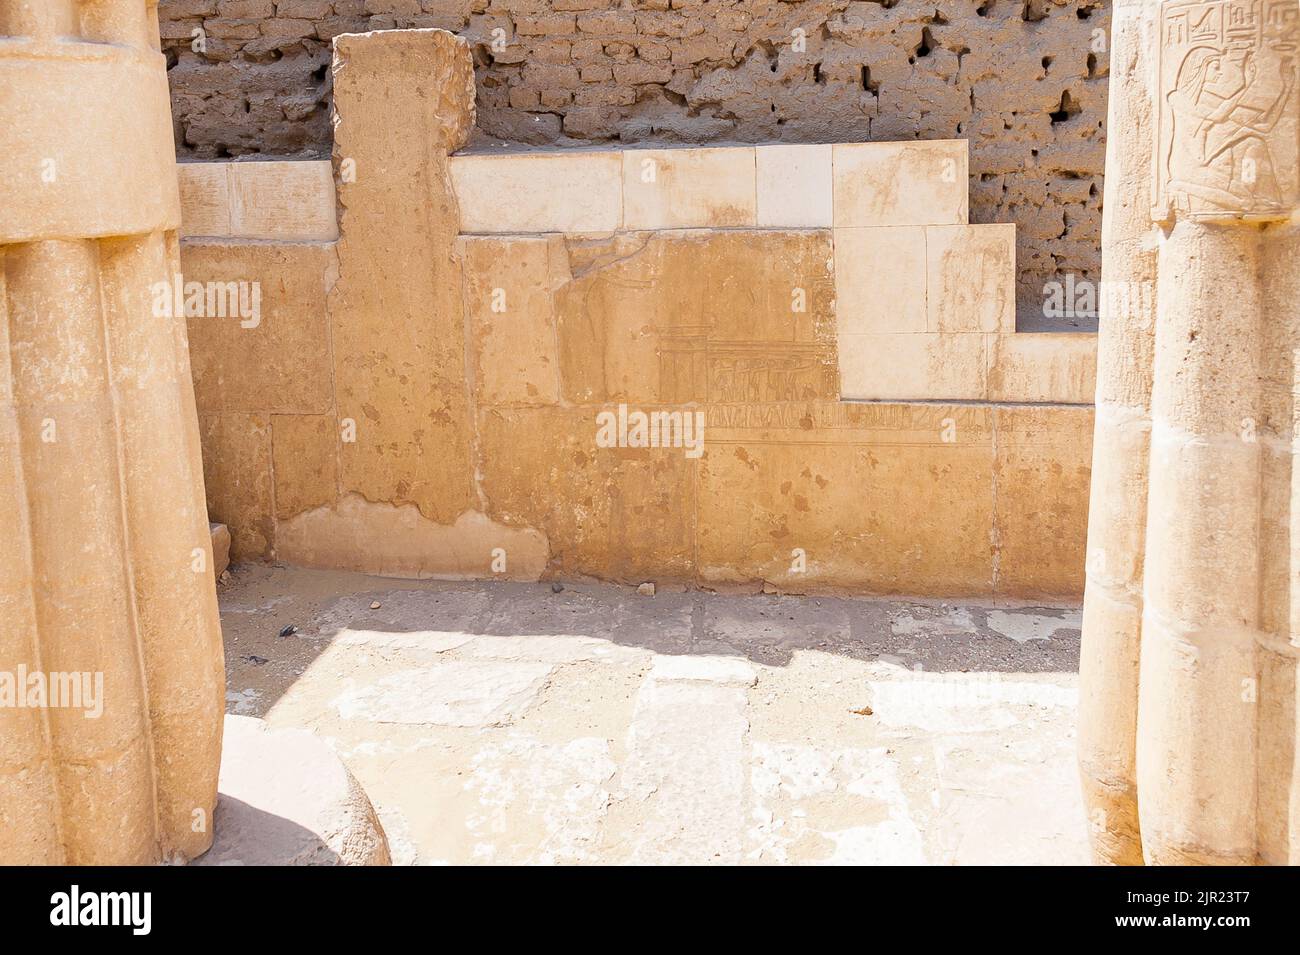 Ägypten, Saqqara, Grab von Horemheb, Südwand des zweiten Gerichts, bleibt von einer früheren Phase Wand, in der letzten Phase des Baus demontiert. Stockfoto